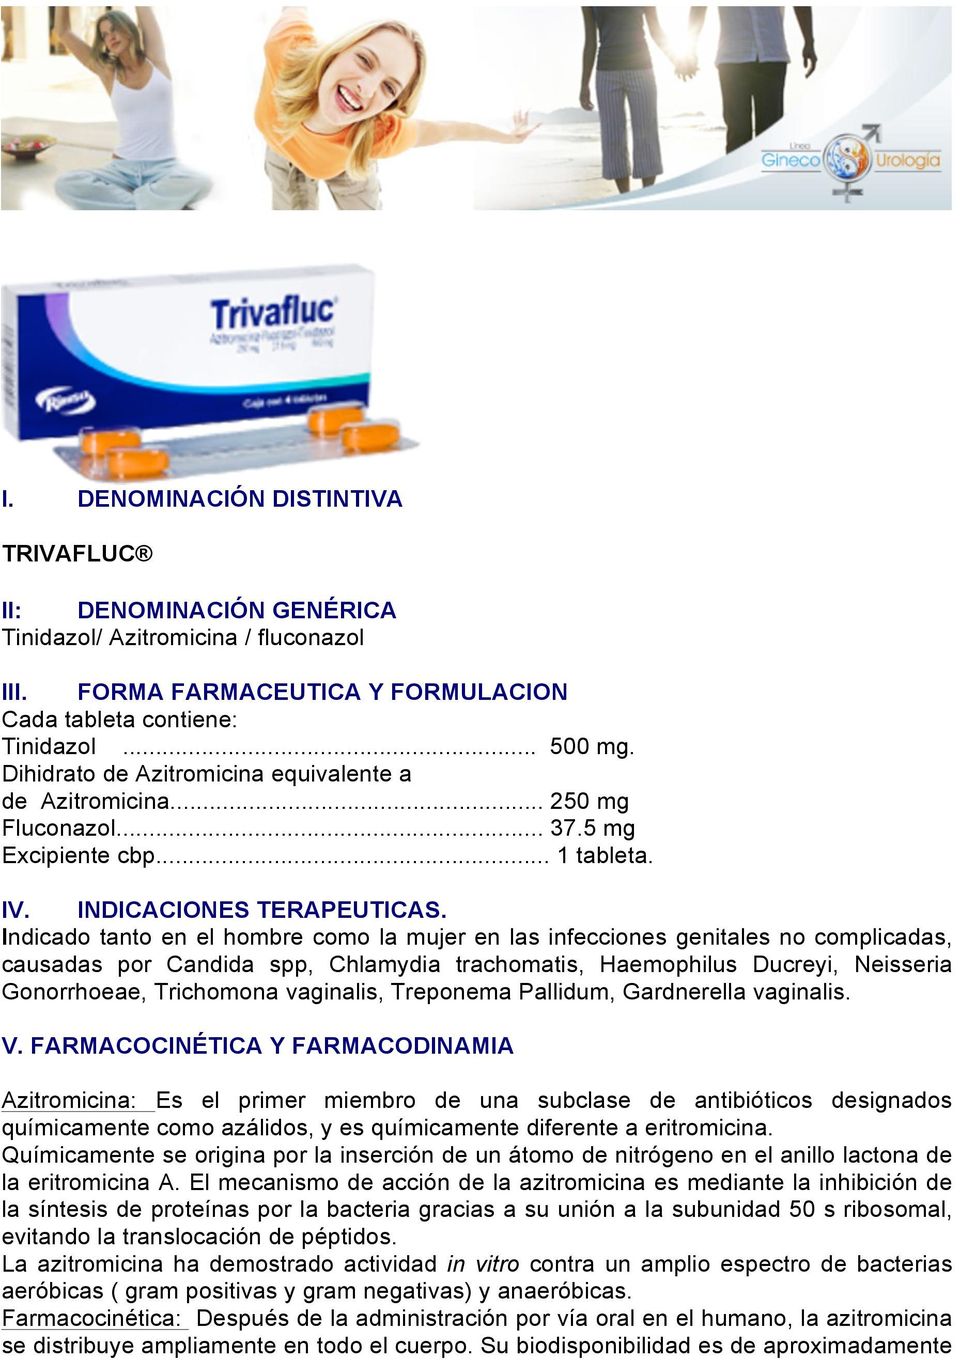 Fluconazol tinidazol genérico — a través de internet barato